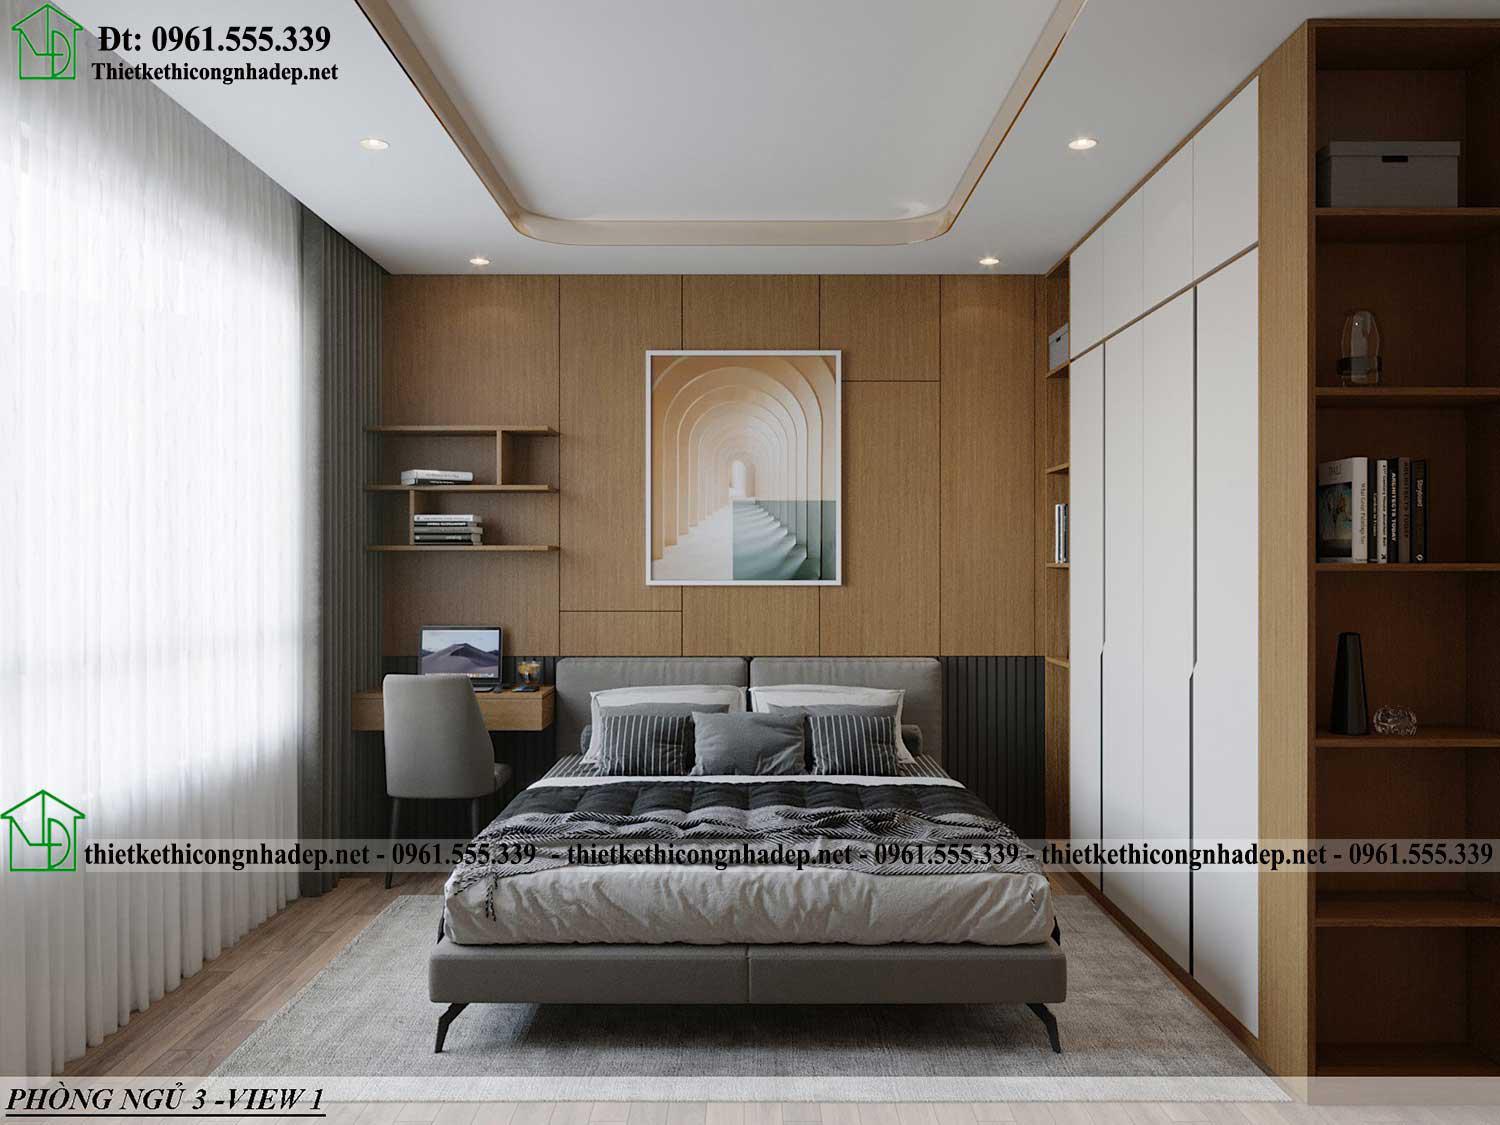 Thiết kế nội thất phòng ngủ số 3 hiện đại NDCC71